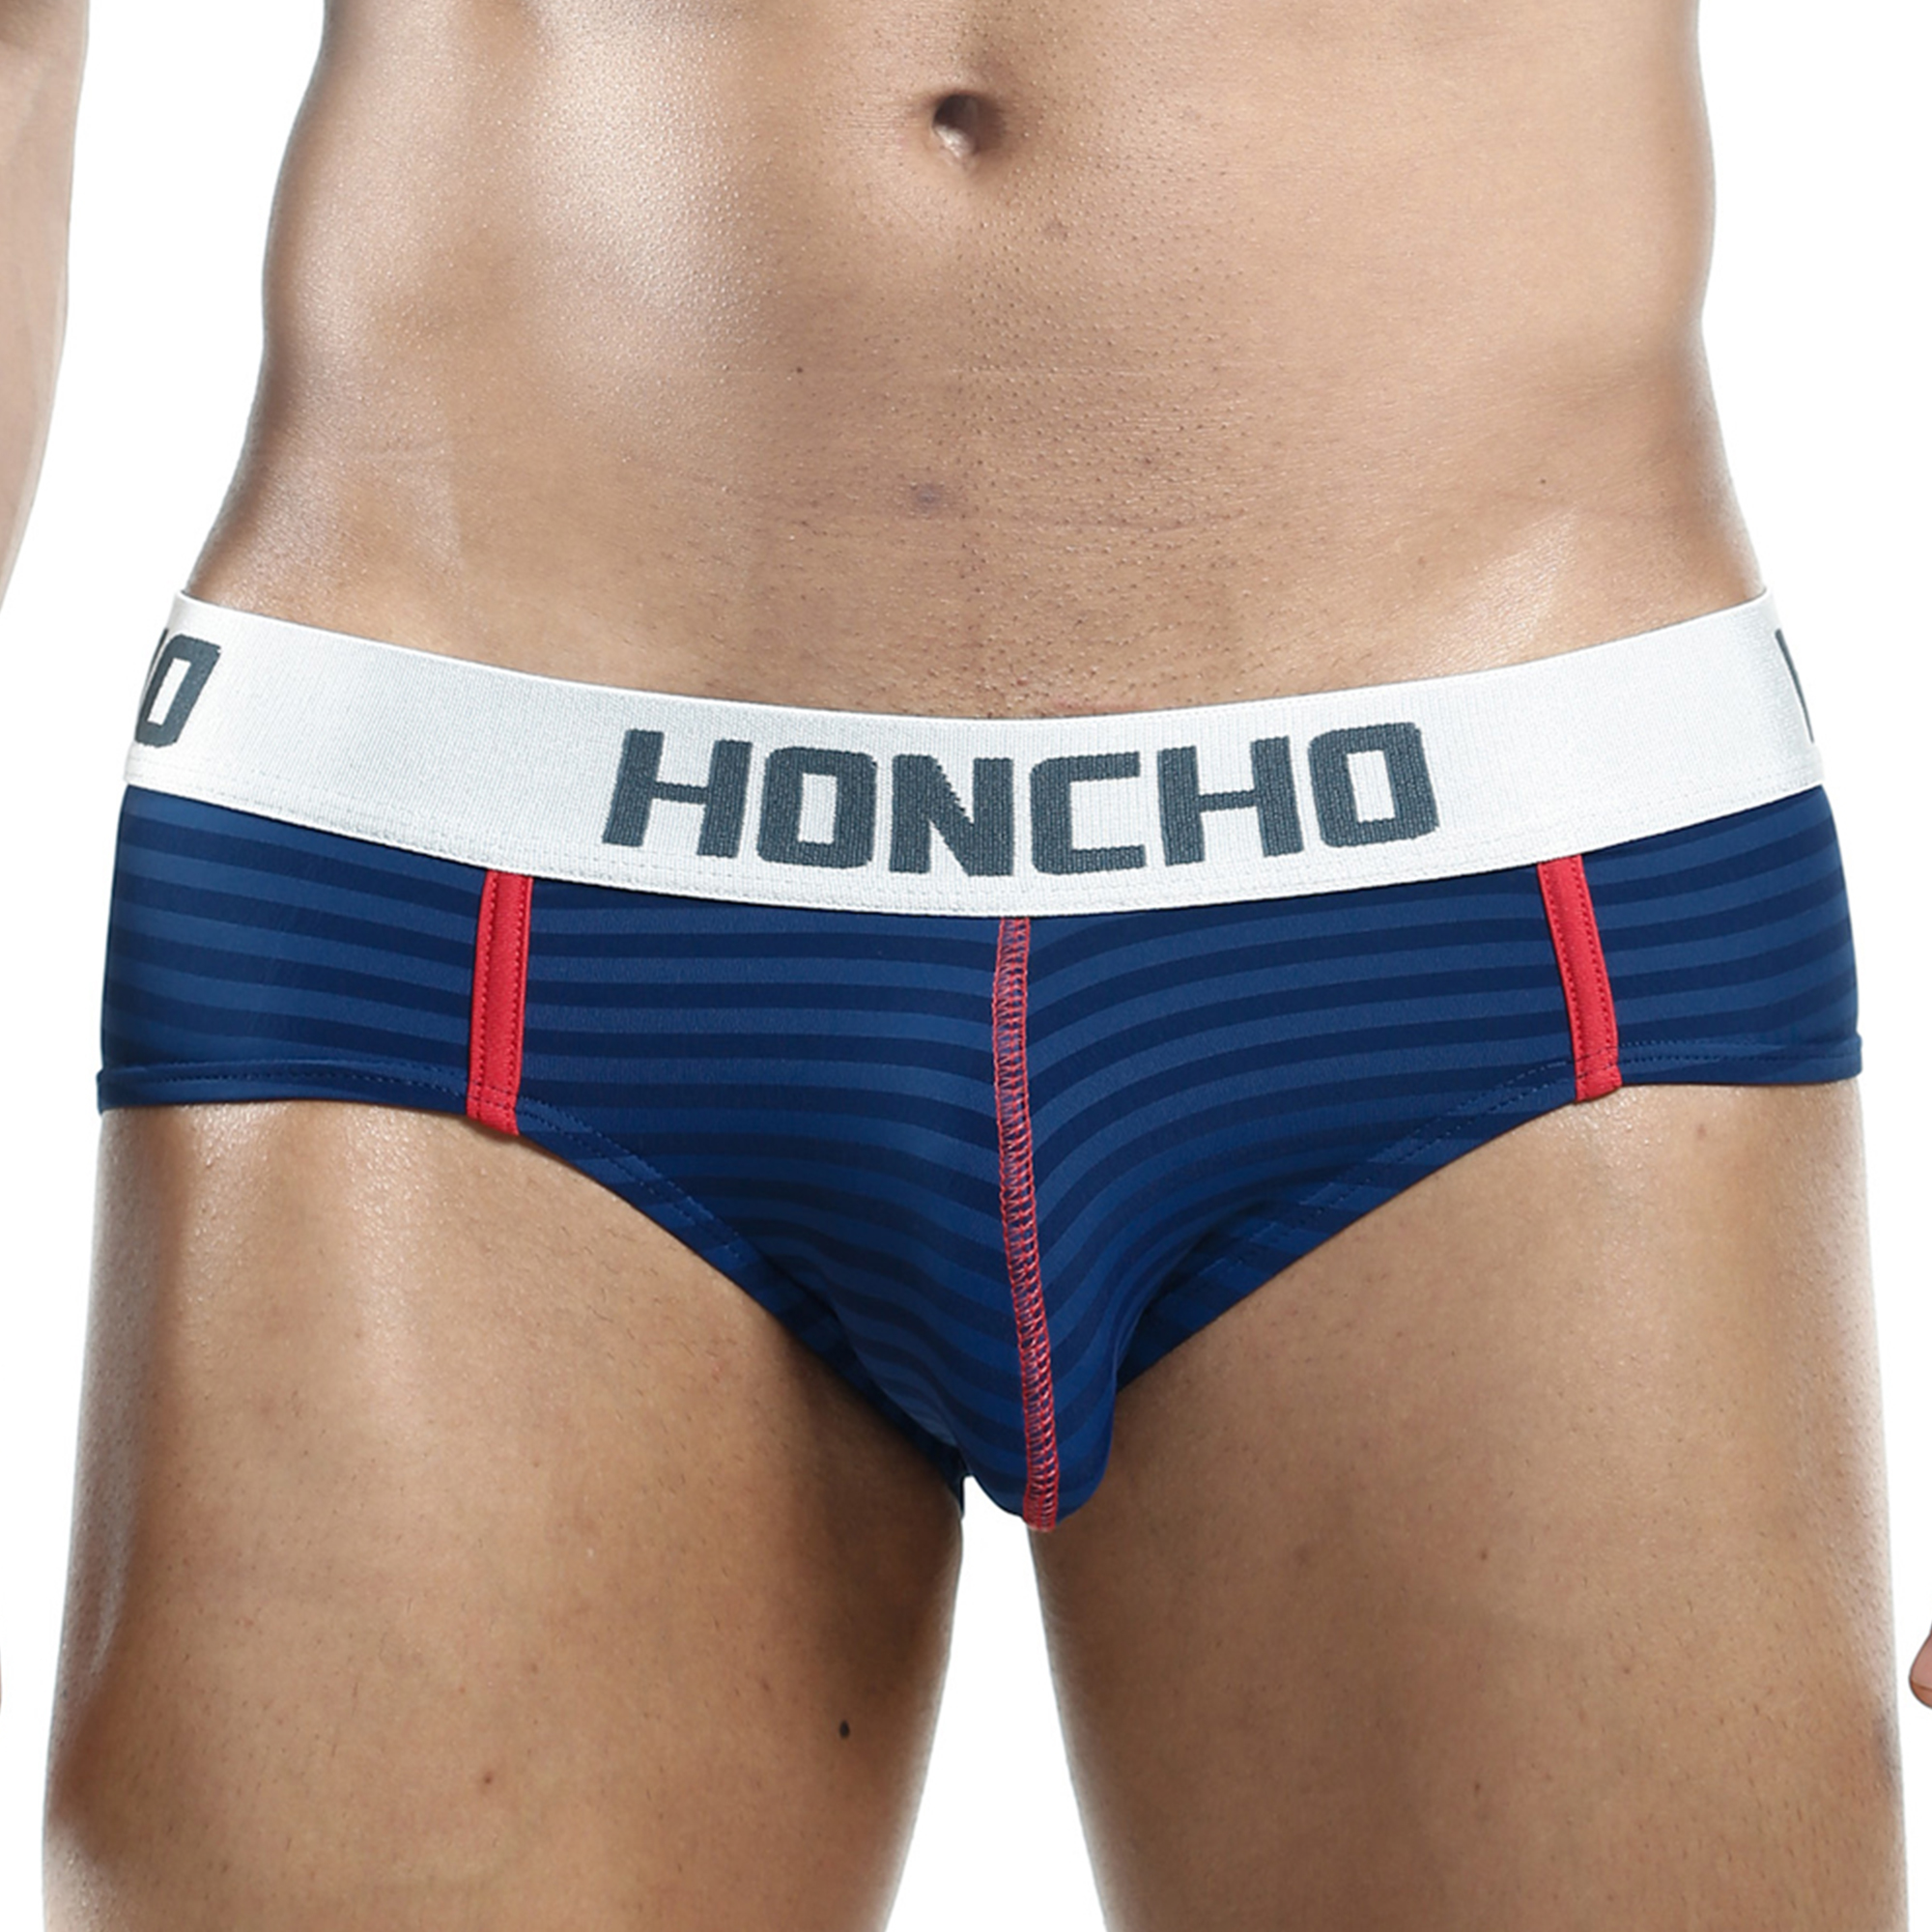 Honcho HOJ016 Brief Mens Underwear